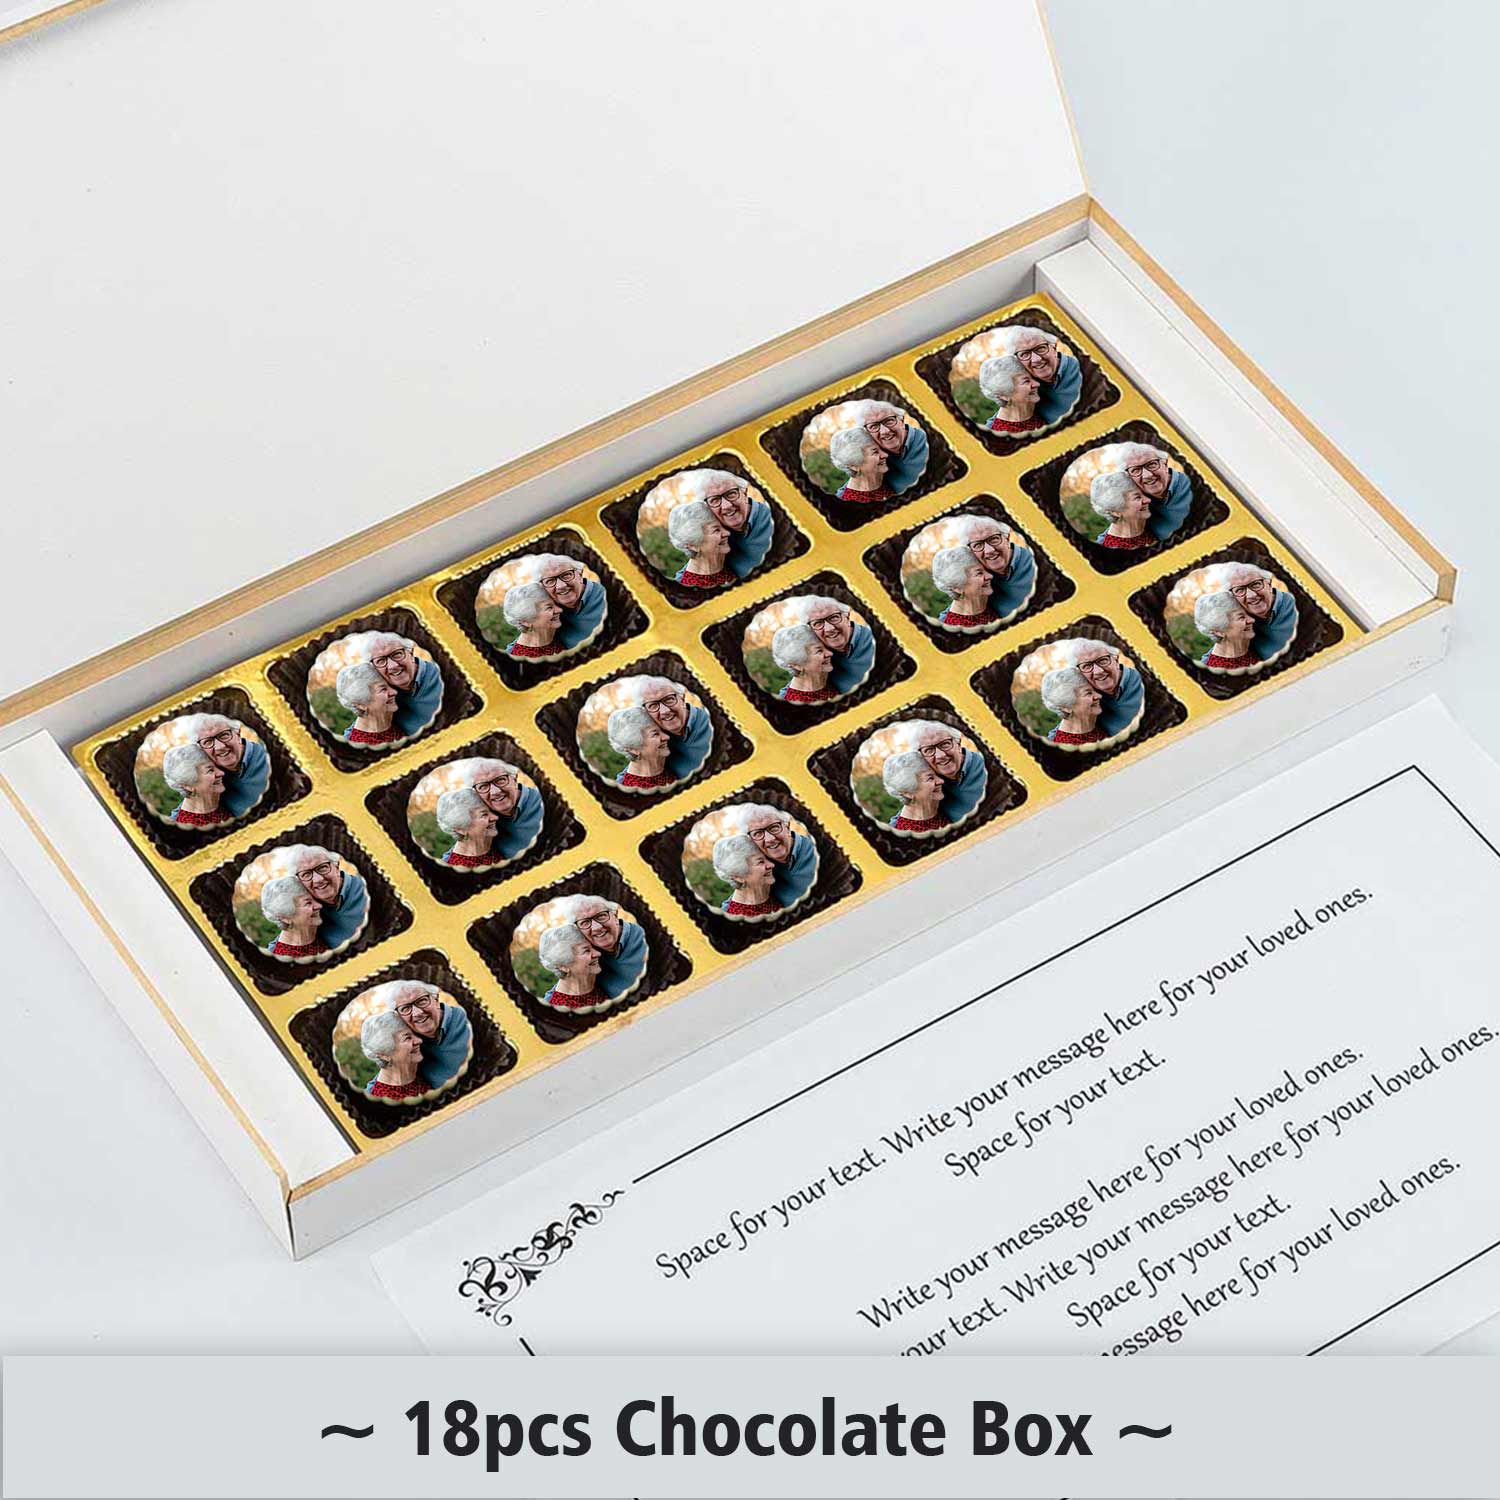 40th anniversary photo printed box of chocolates